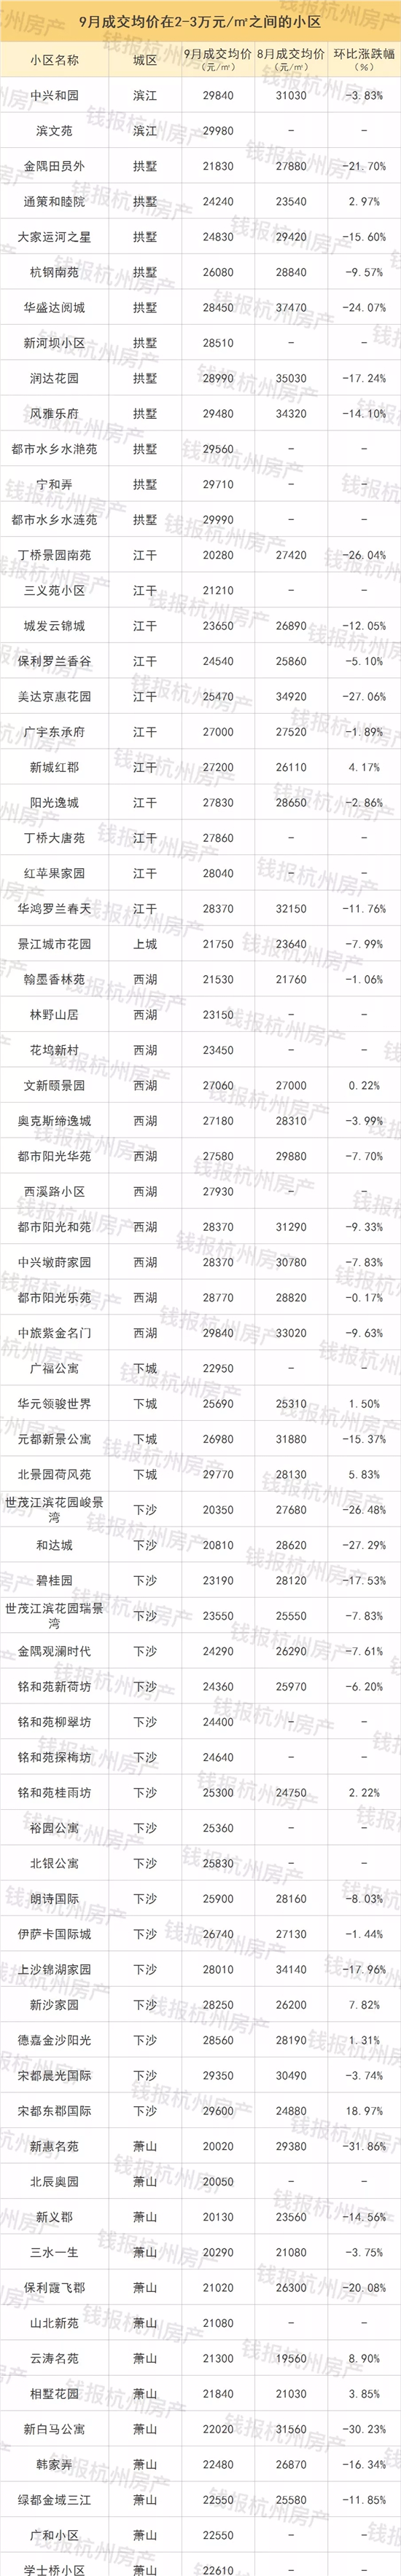 杭州最新最全二手房成交榜 超过一半的二手房跌